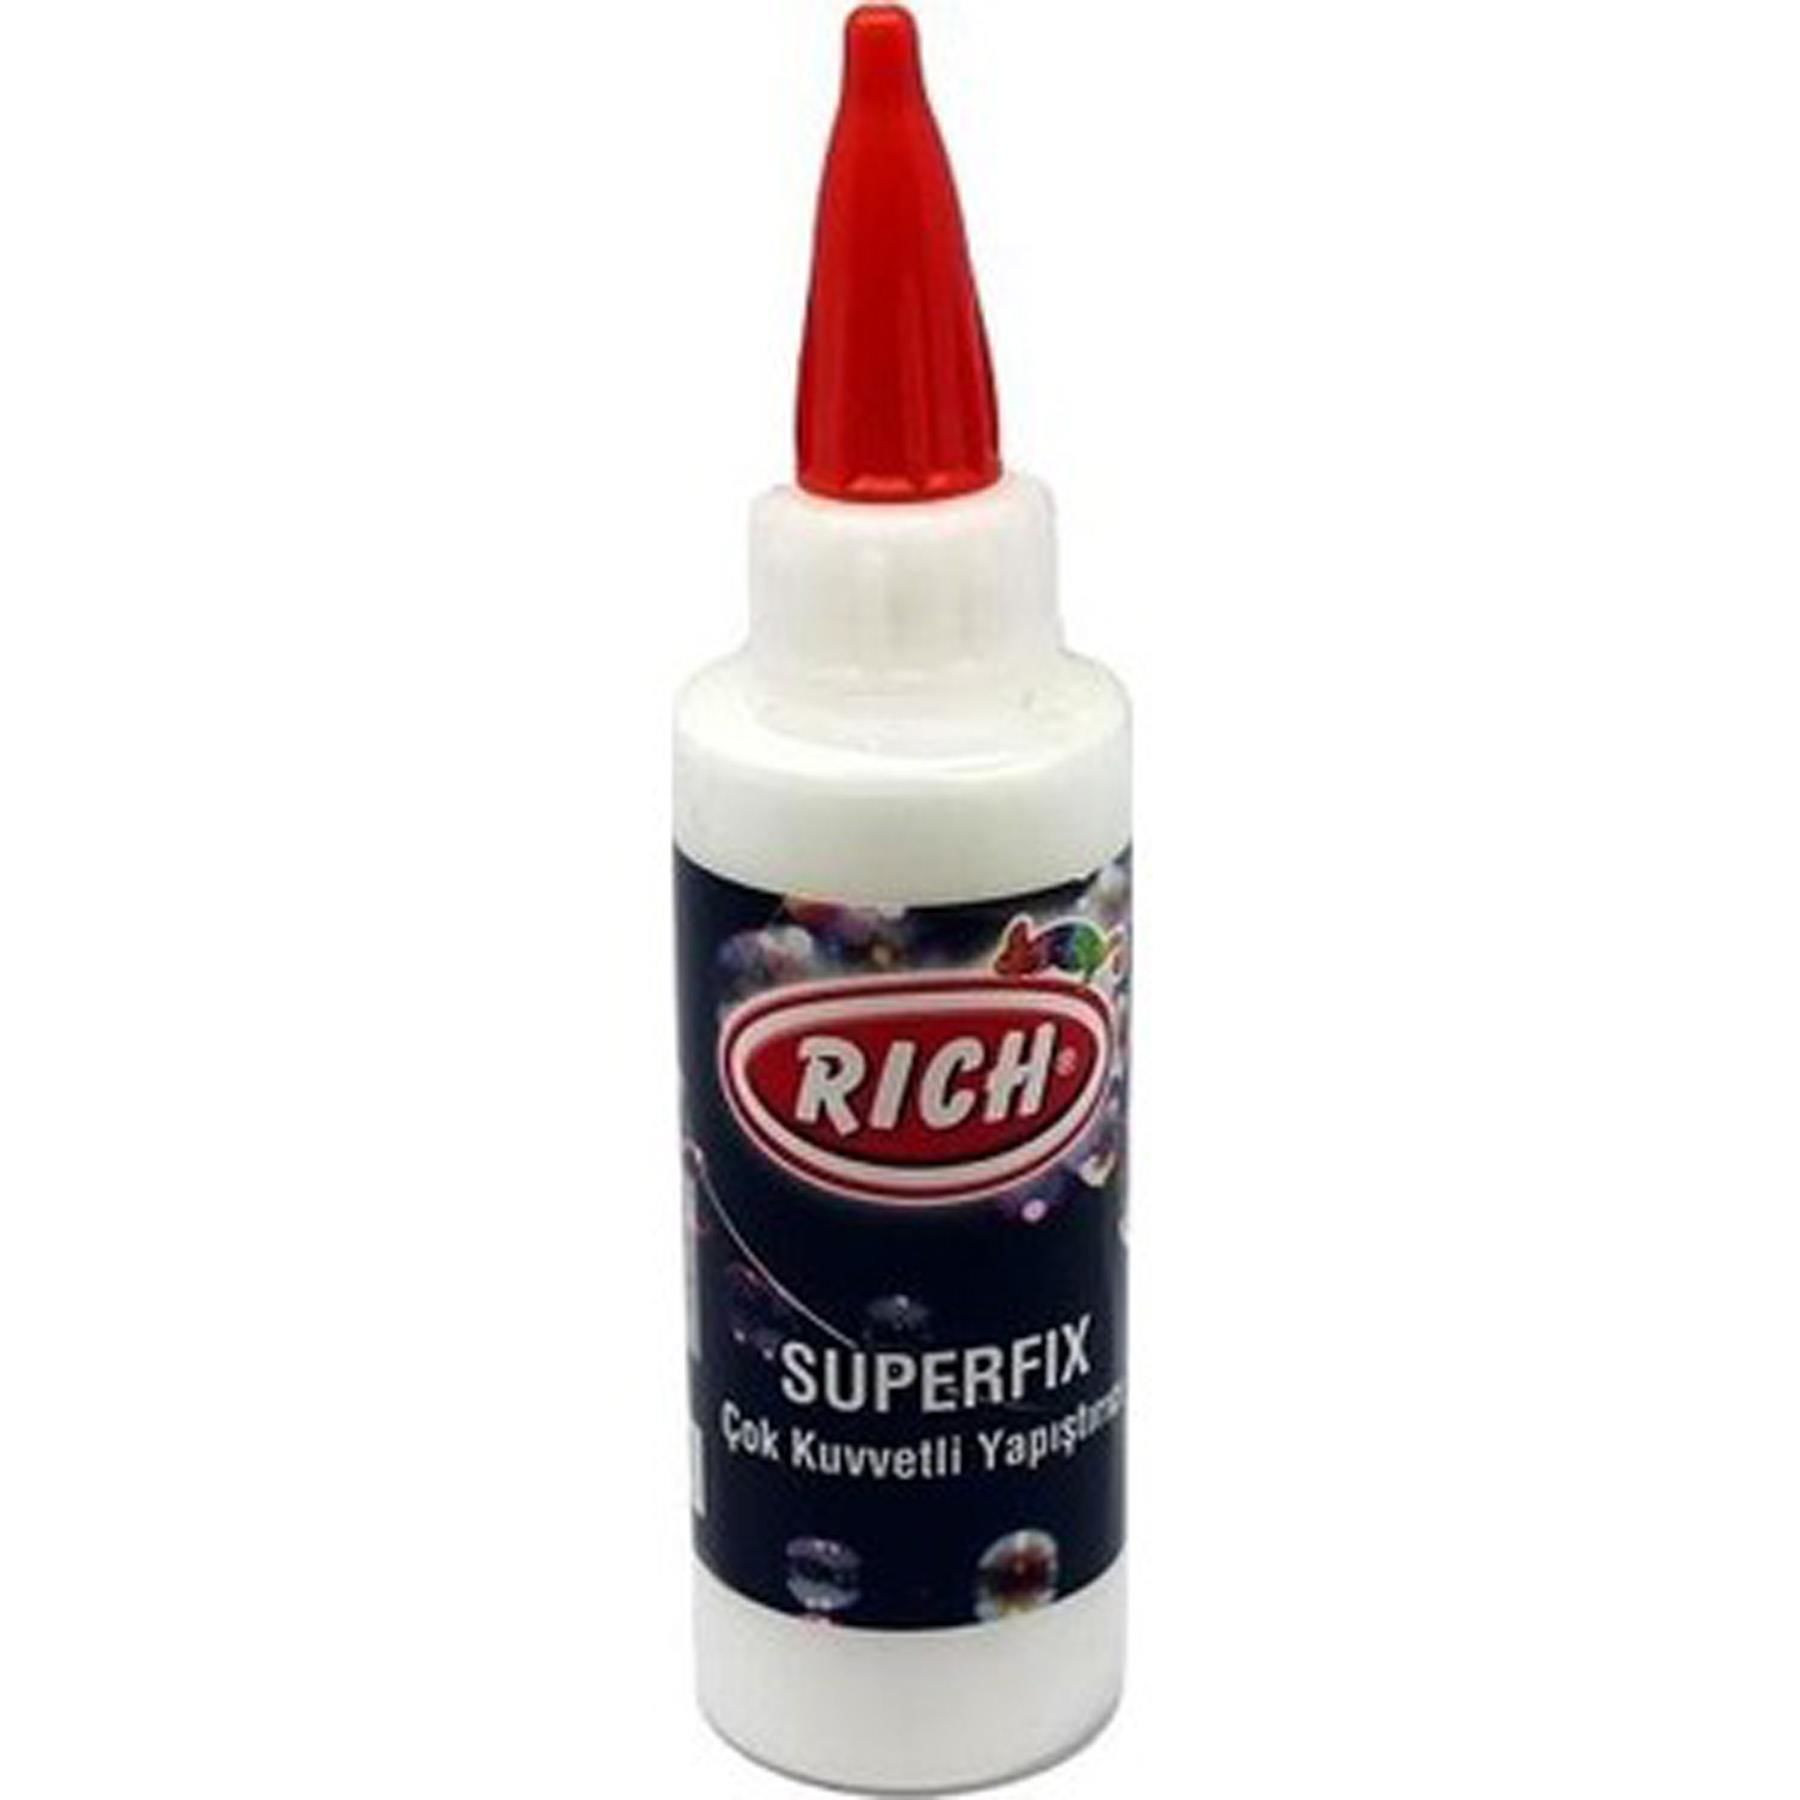 Rich Superf Ix Çok Güçlü Yapıştırıcı 120cc 120-0130 (1 Adet)